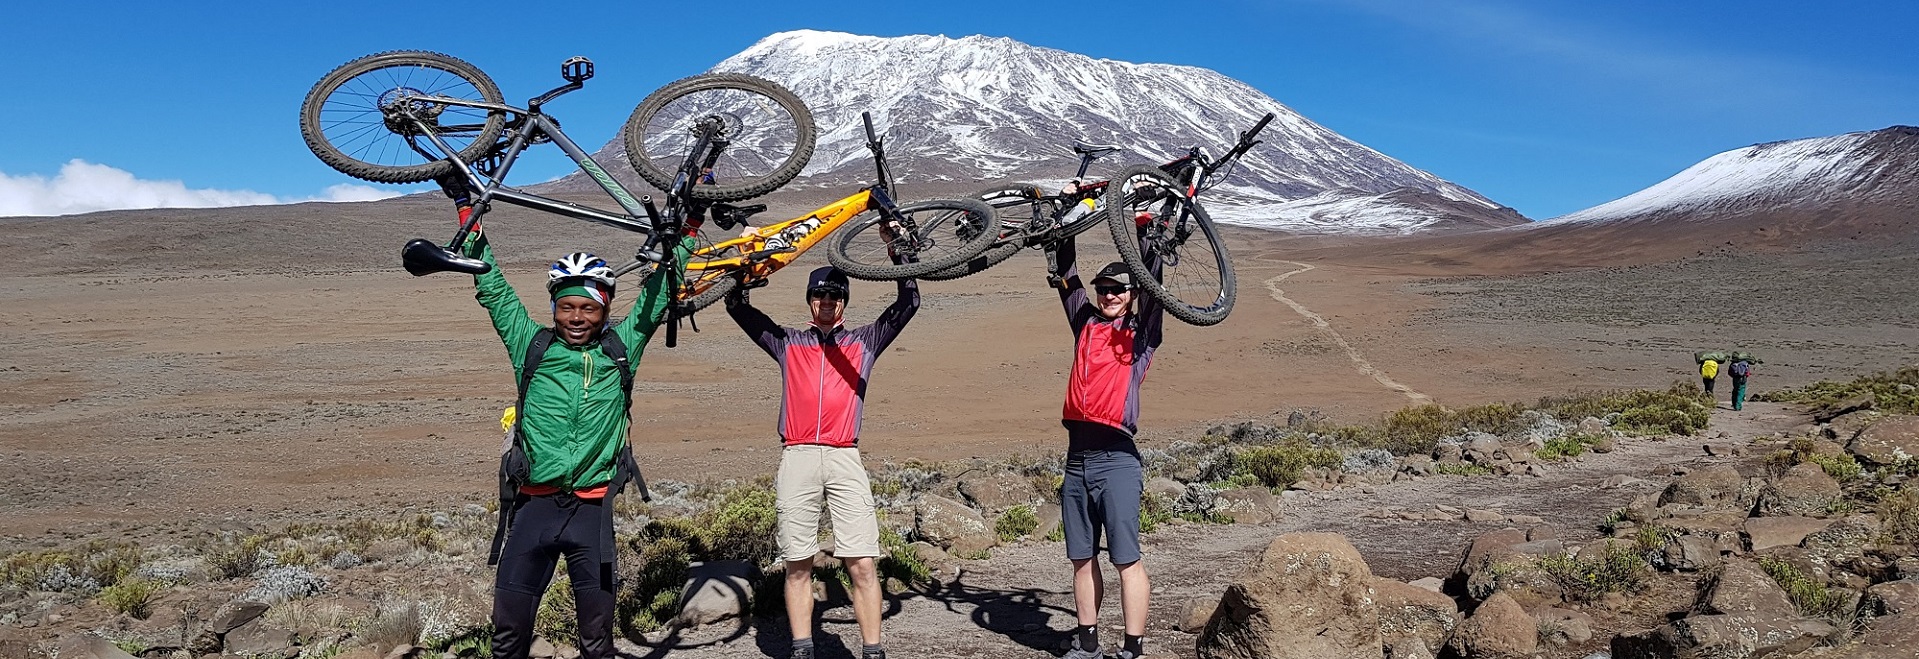 Kilimanjaro Mountain Biking Tours